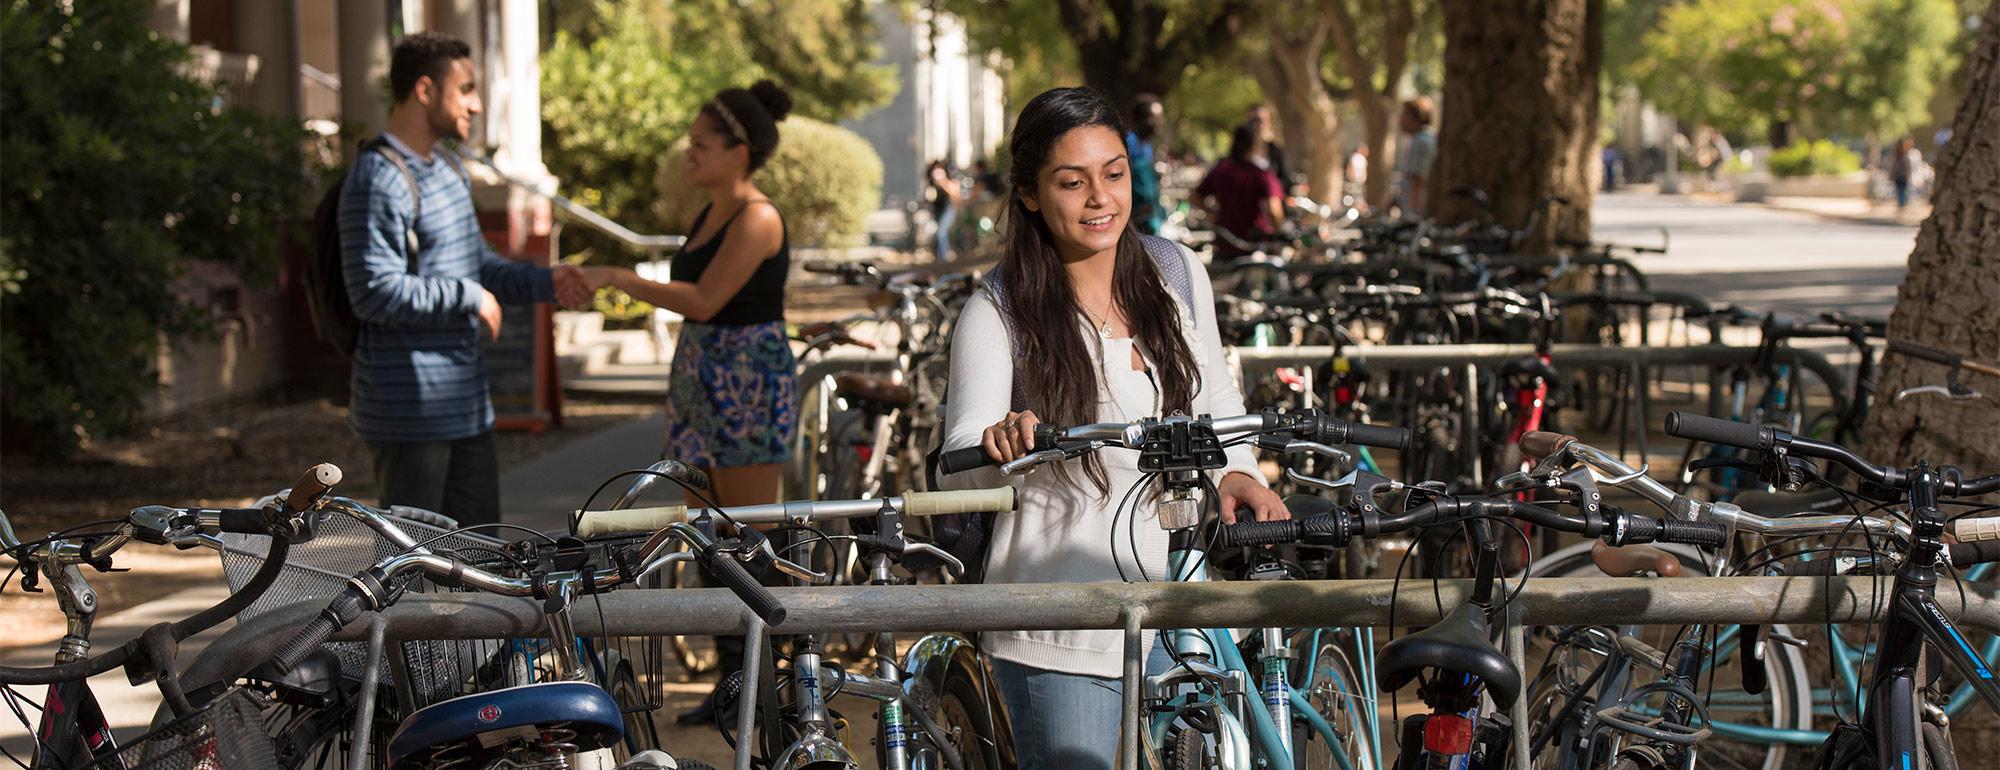 一个学生在放满自行车的自行车架上给自行车开锁，两个学生在后面说话